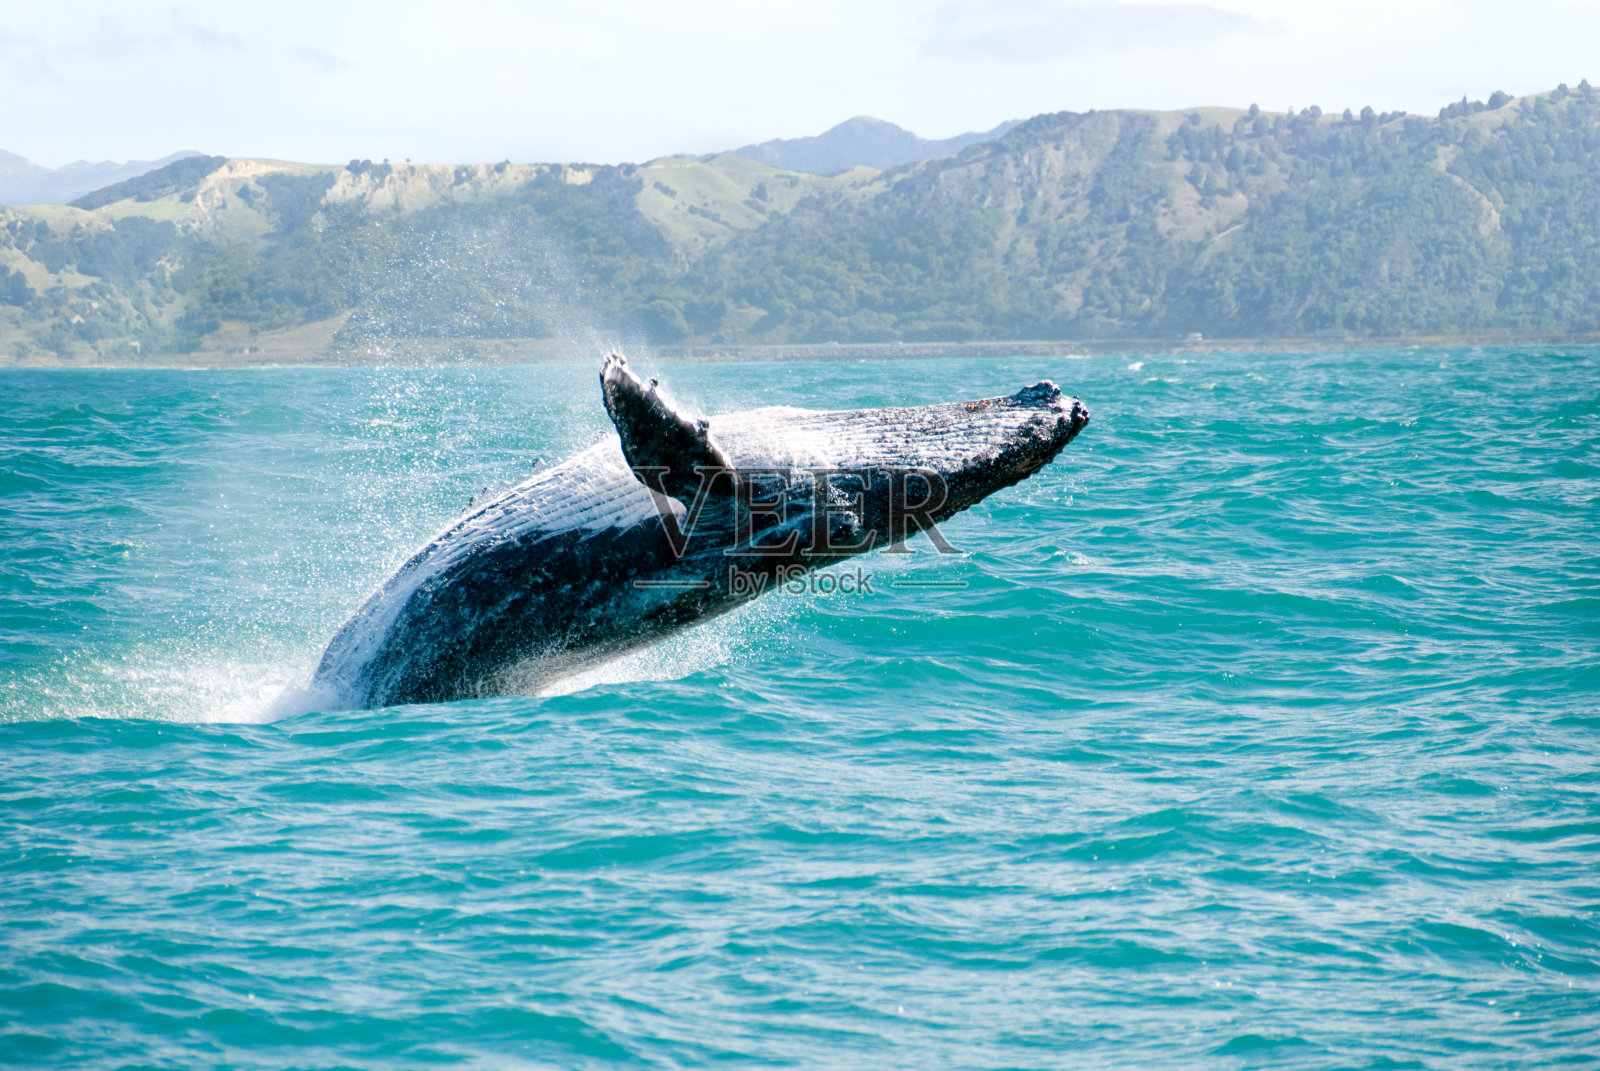 座头鲸跃出水面的特写照片摄影图片